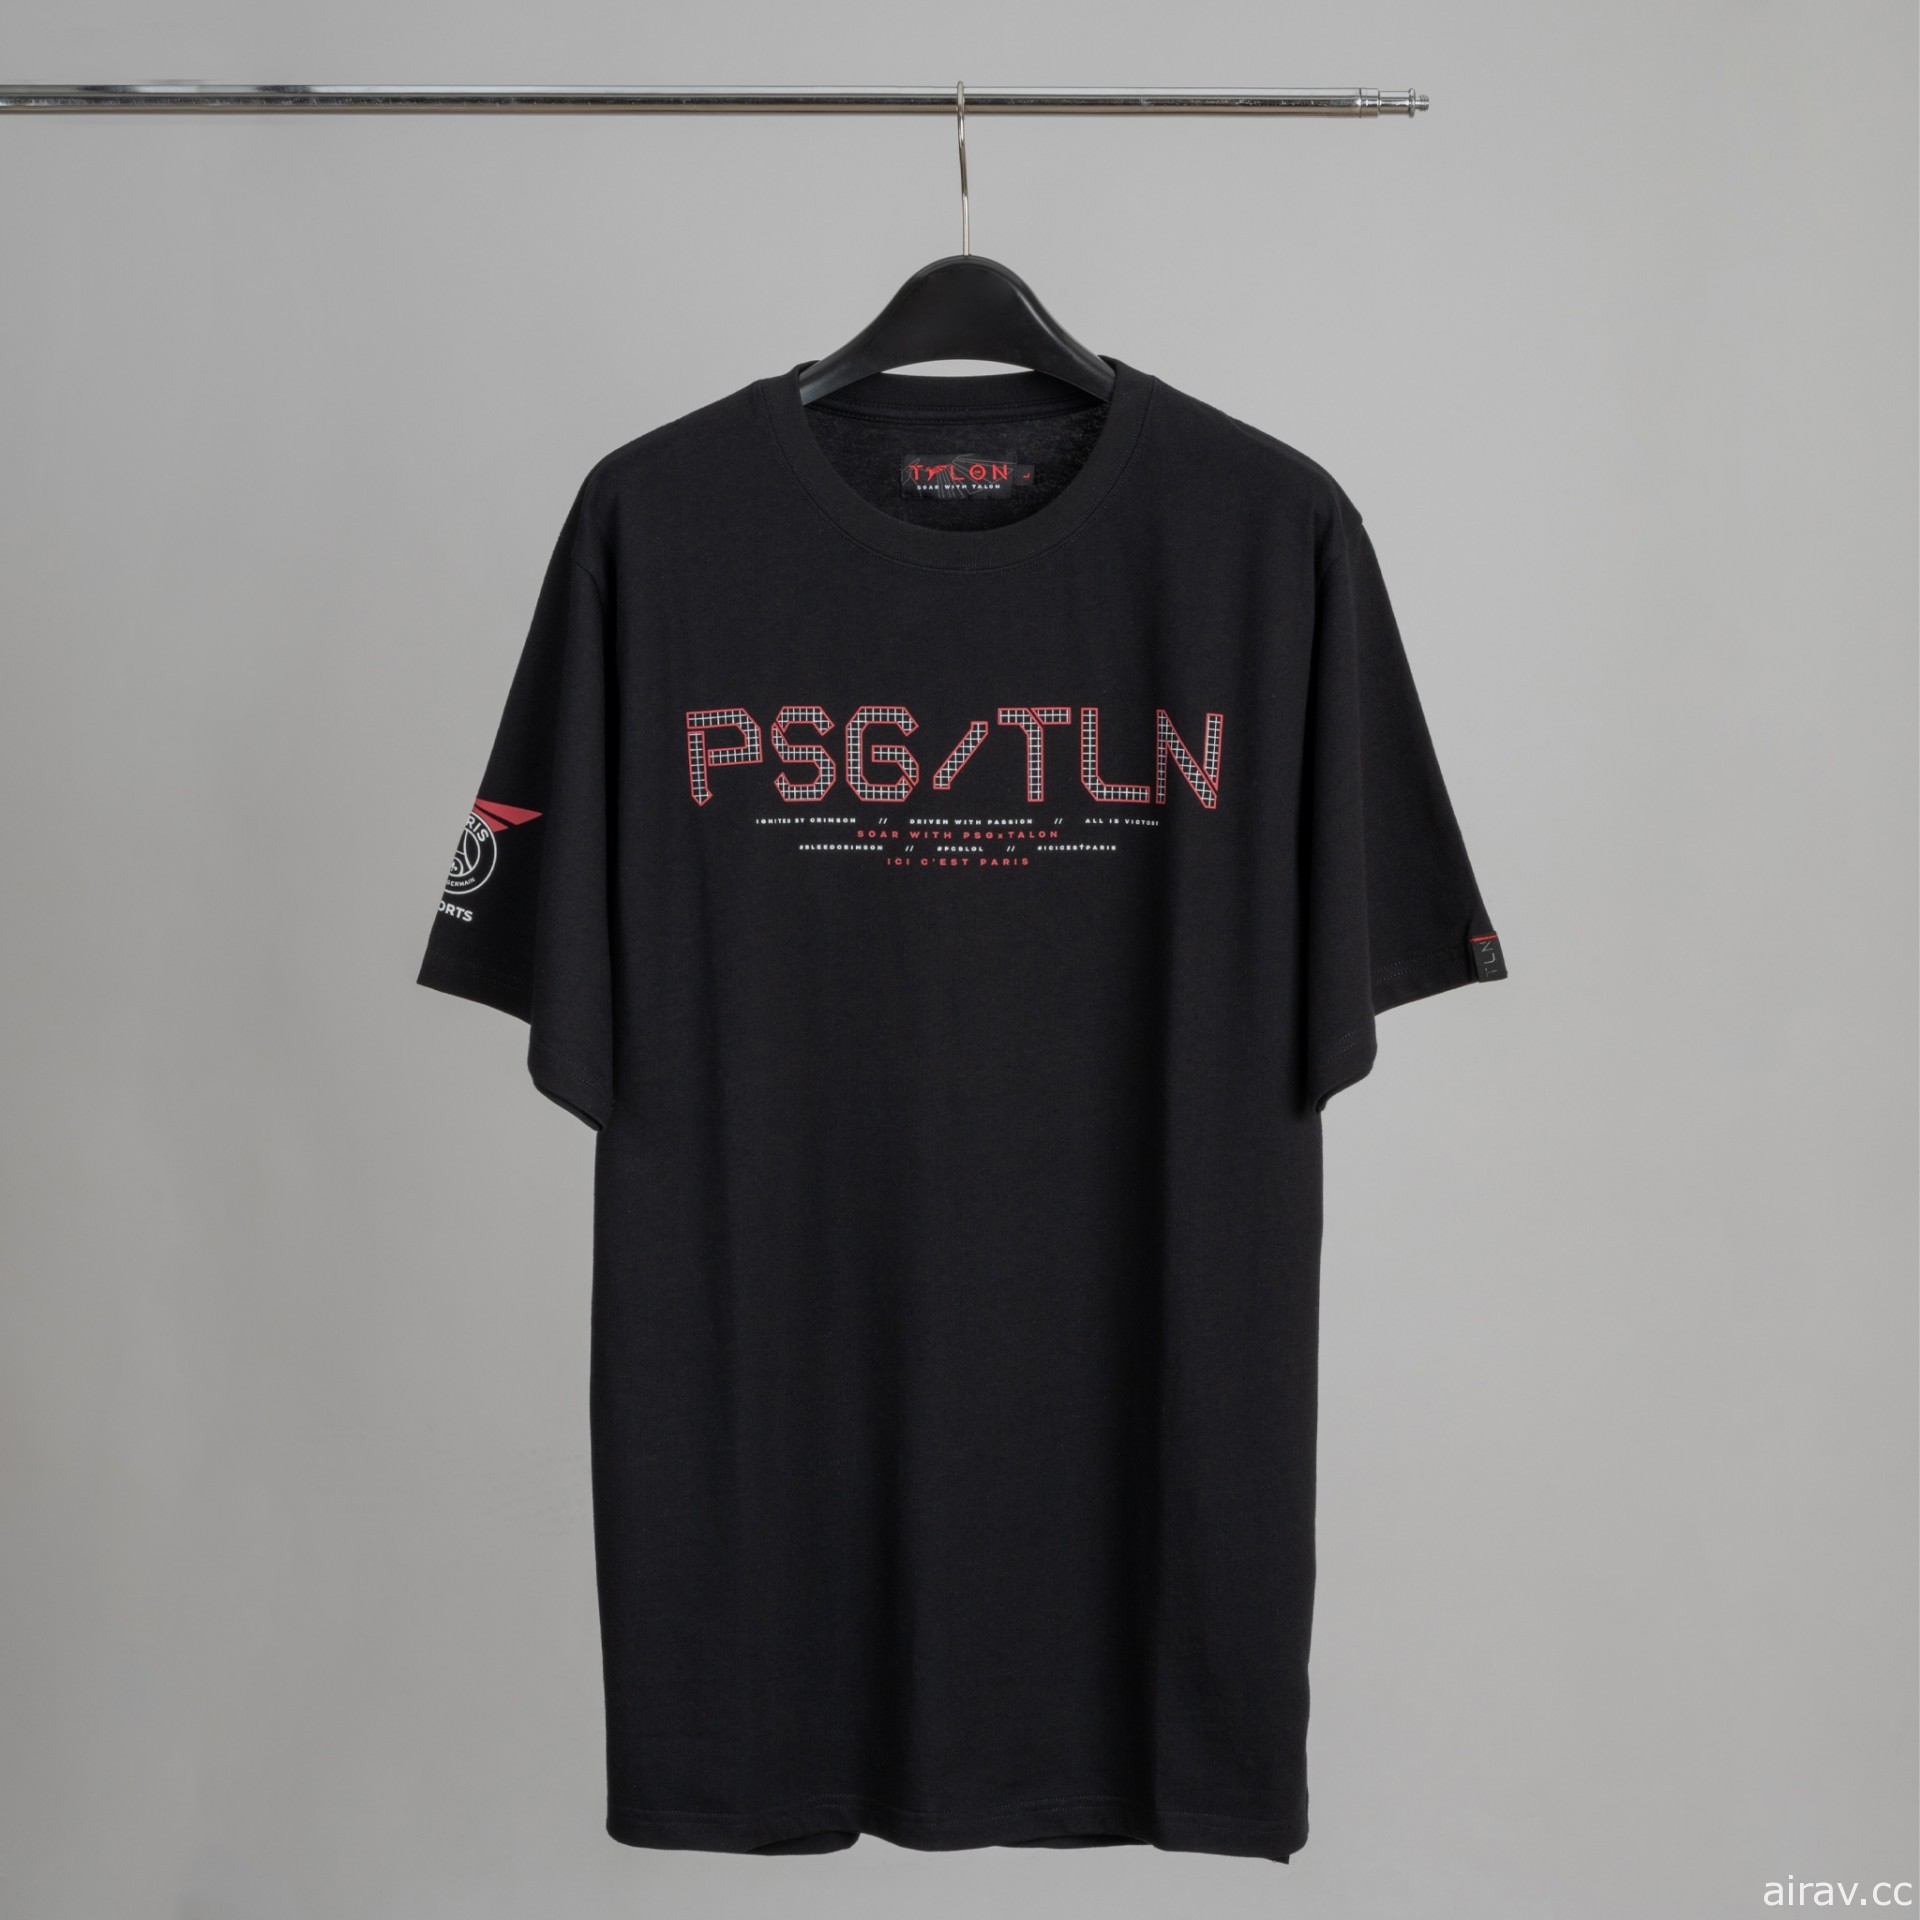 纪念《英雄联盟》PSG Talon 职业战队前进 MSI　三款限量 T-shirt 明日开卖